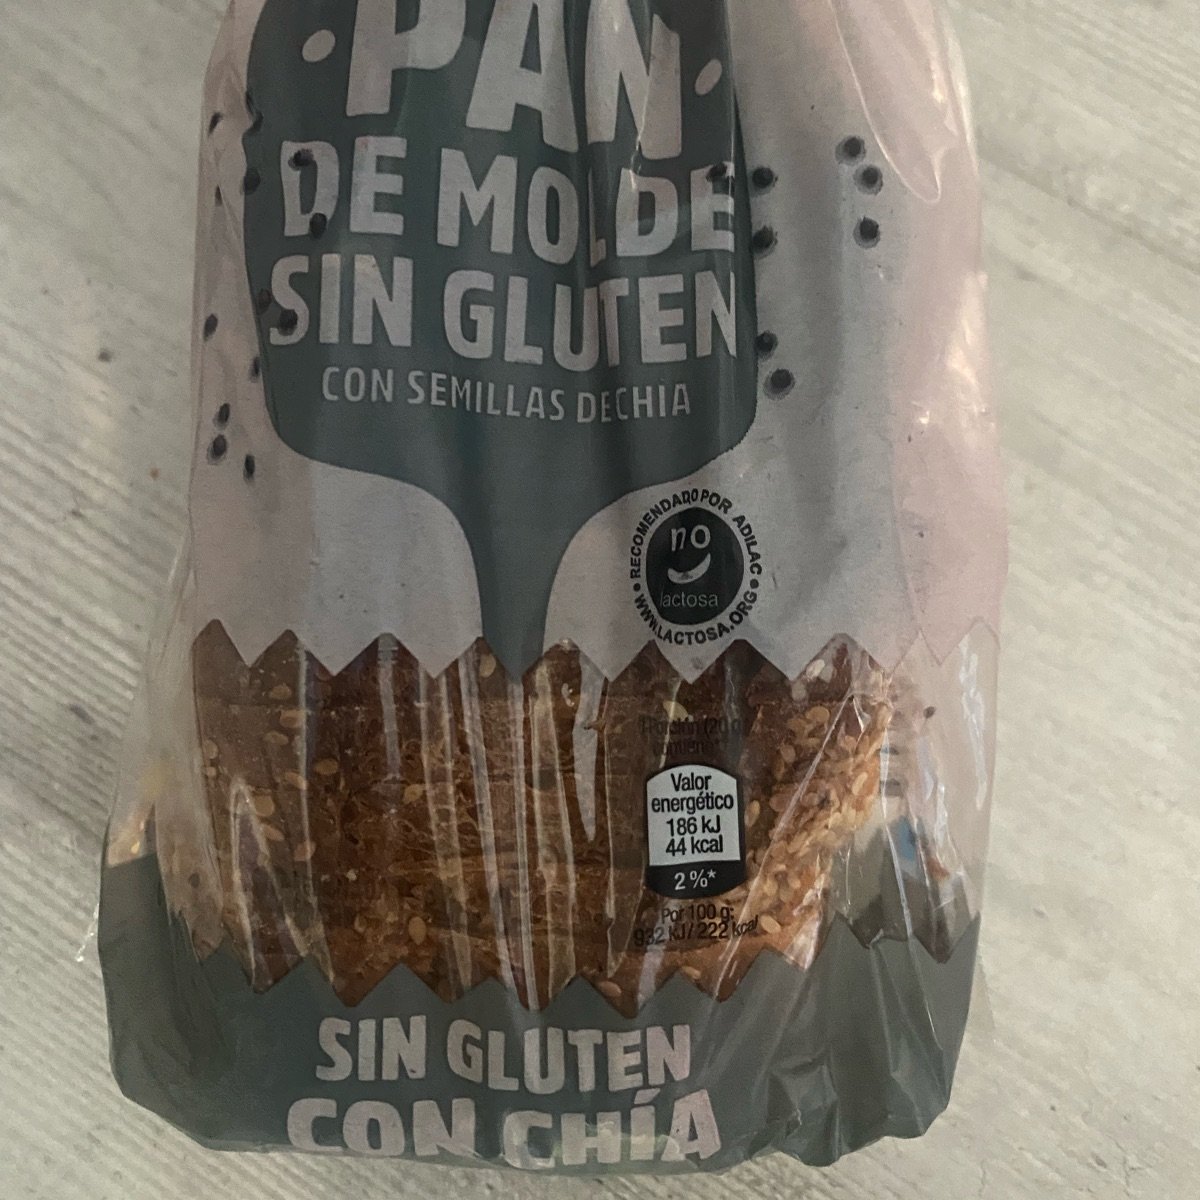 El Horno de Aldi pan de molde sin gluten Reviews | abillion